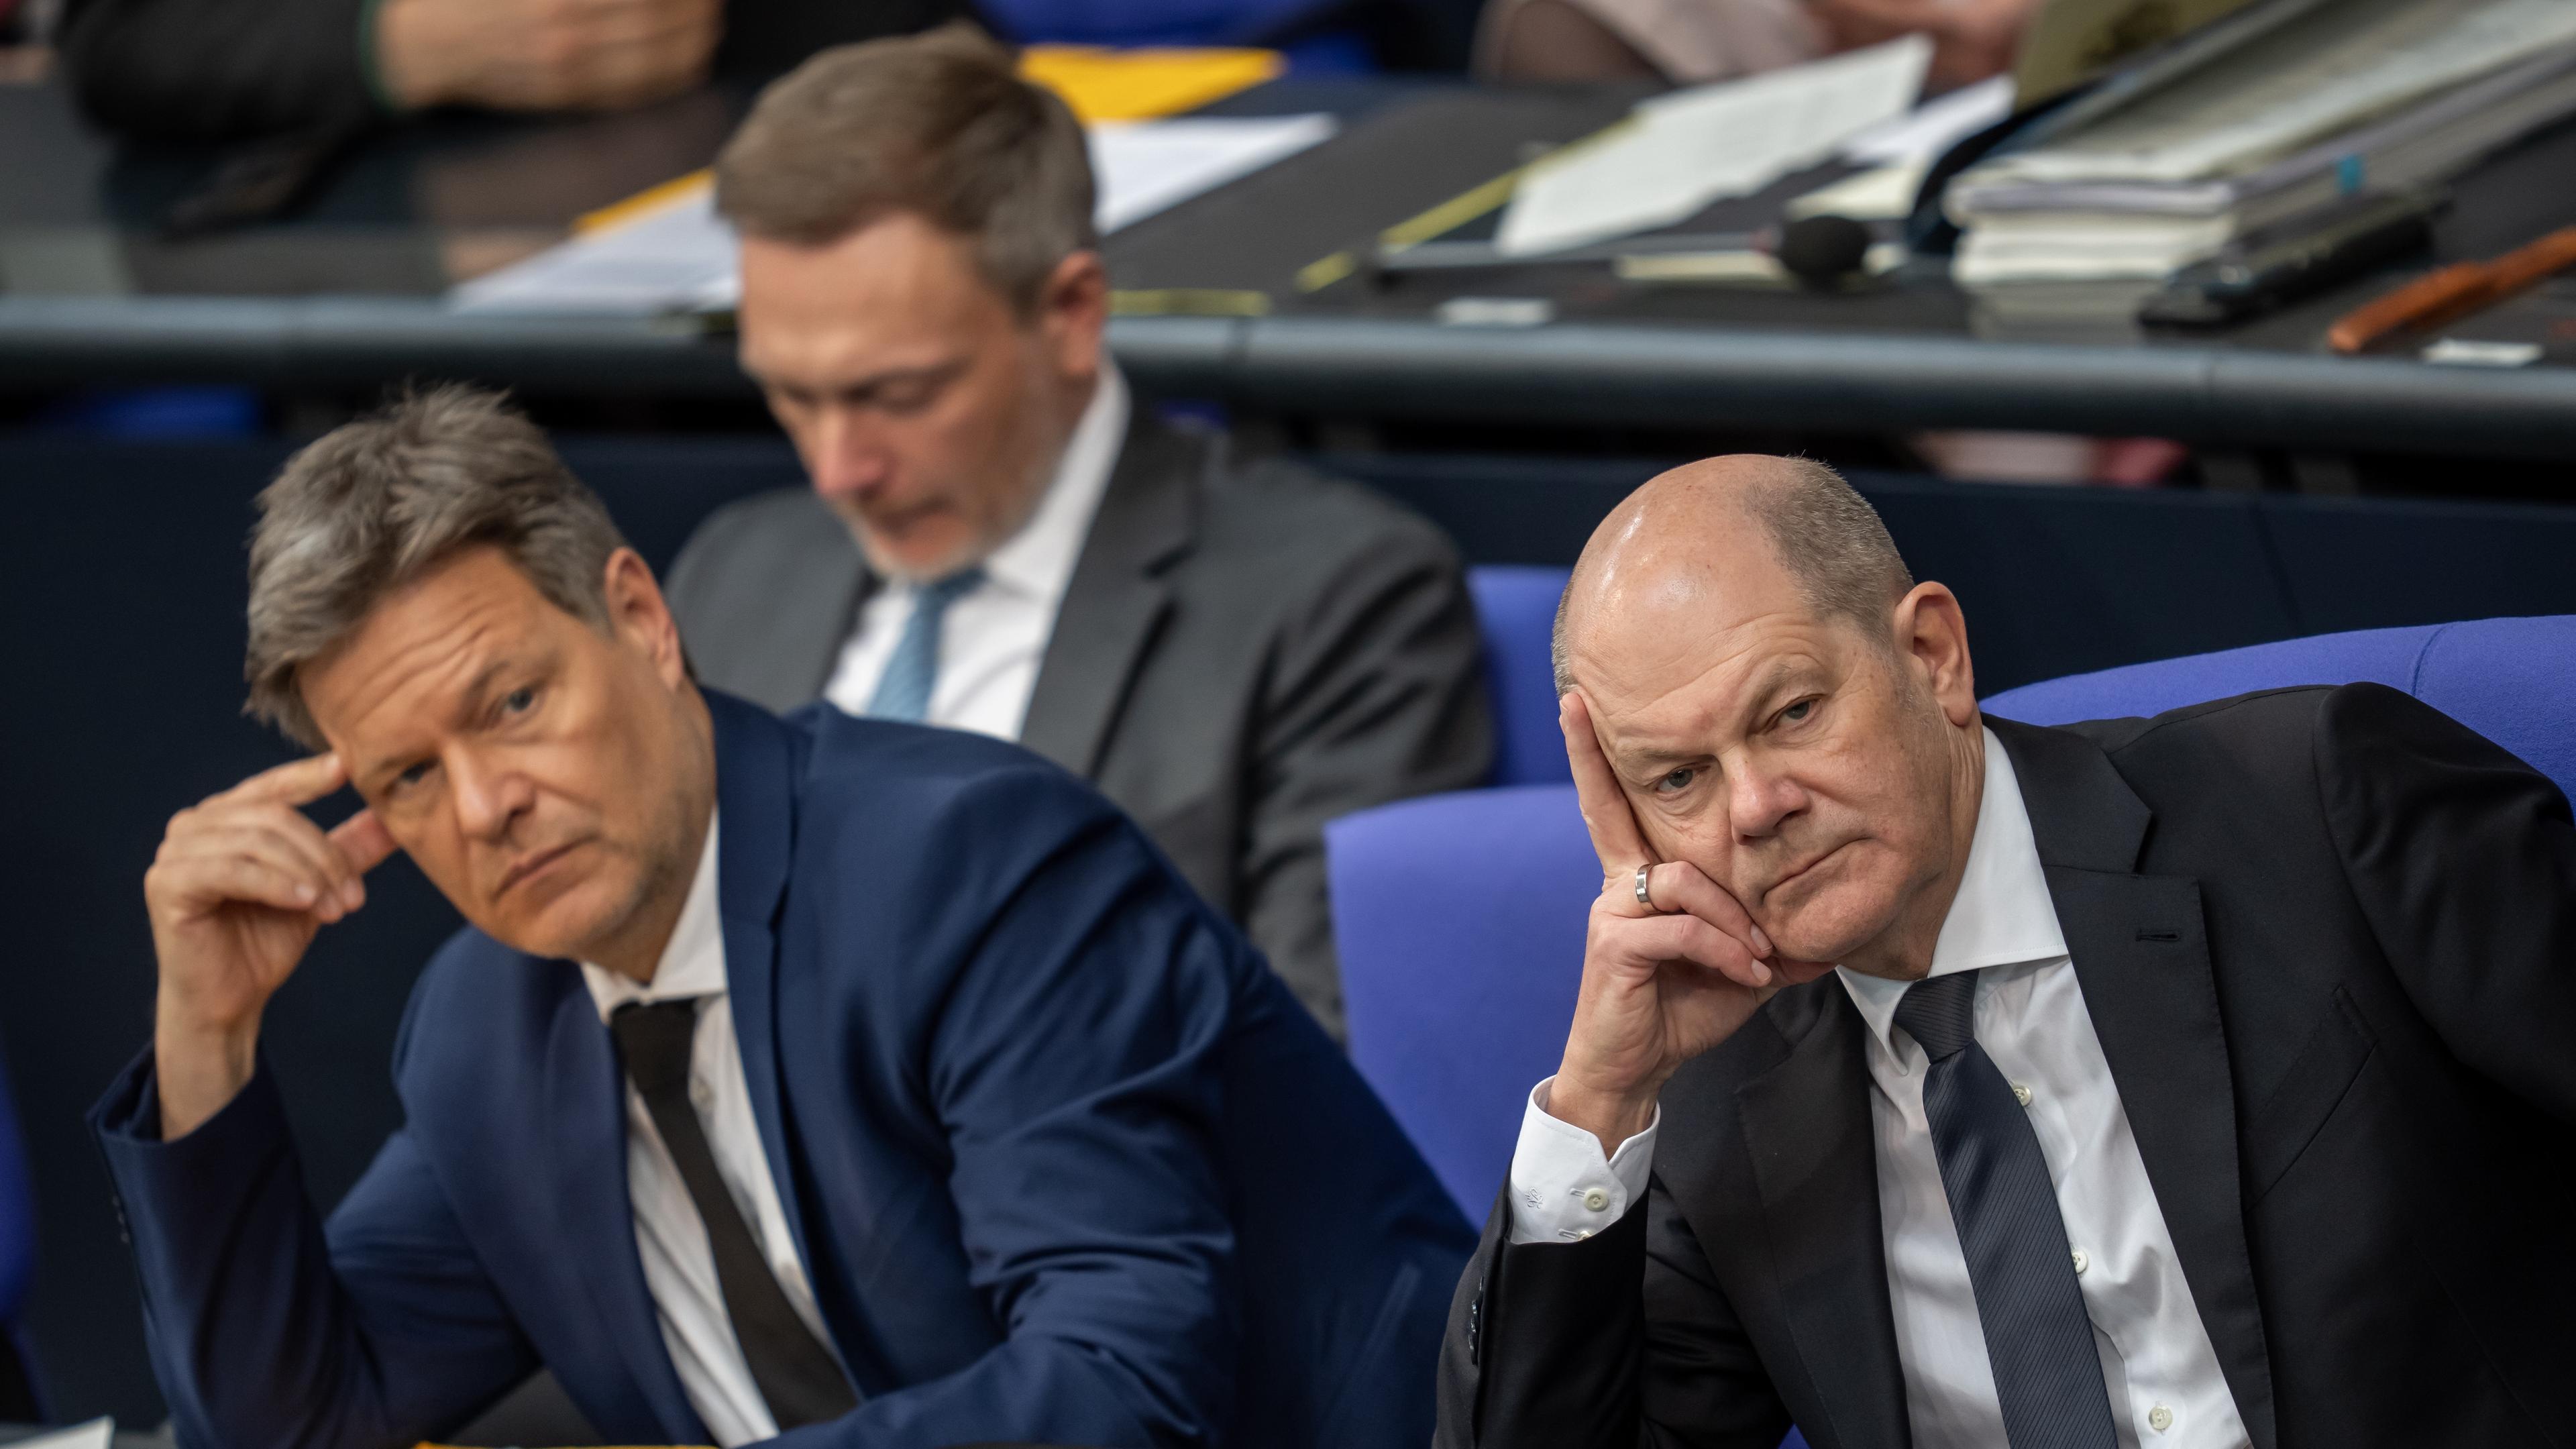 Bundeskanzler Olaf Scholz (r, SPD), Robert Habeck (M, Bündnis 90/Die Grünen), Bundesminister für Wirtschaft und Klimaschutz, und Christian Lindner (FDP), Bundesminister der Finanzen, verfolgen im Bundestag die Aussprache